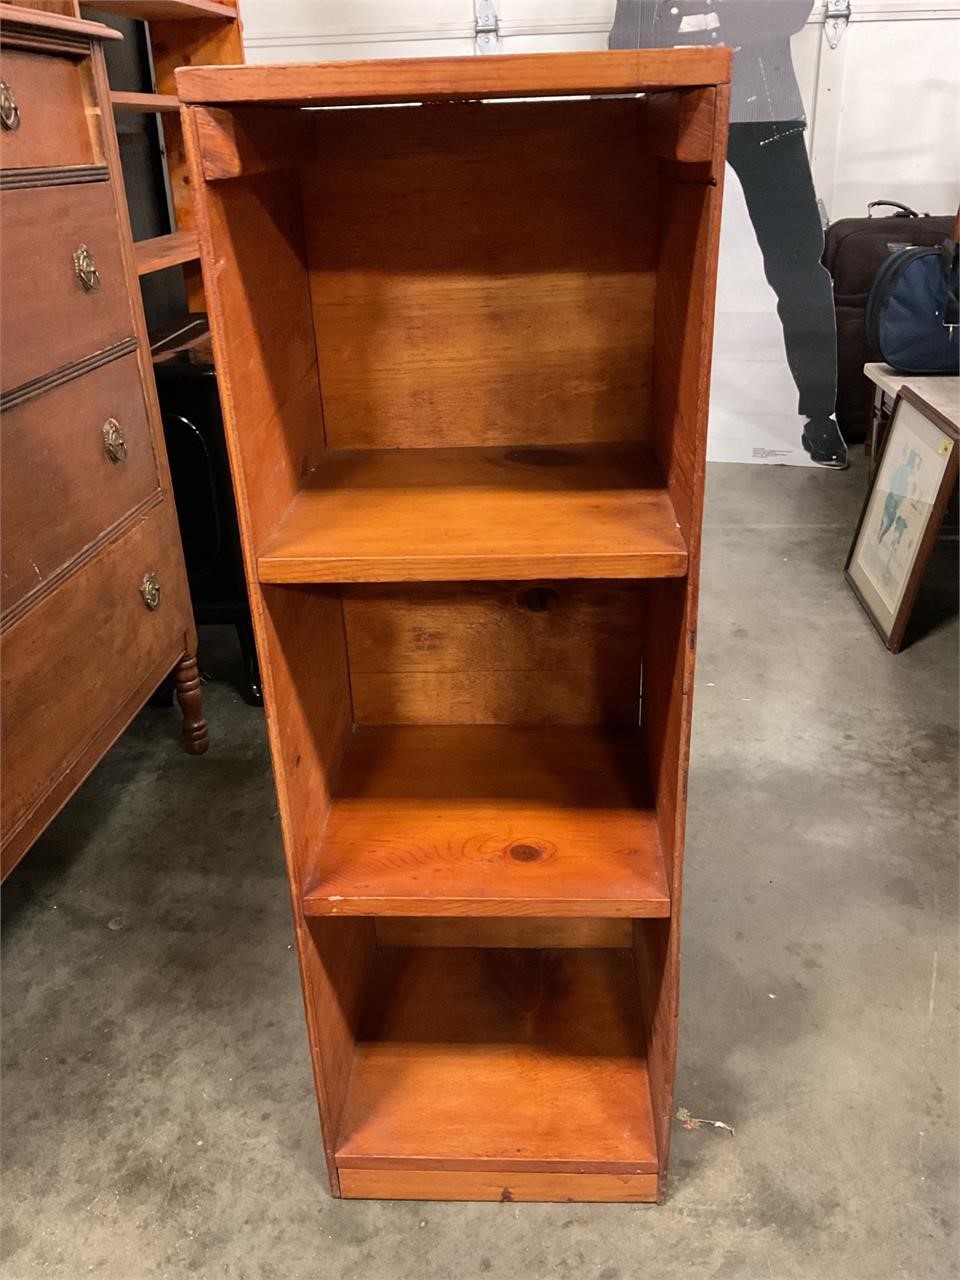 39x13x12 wood shelf